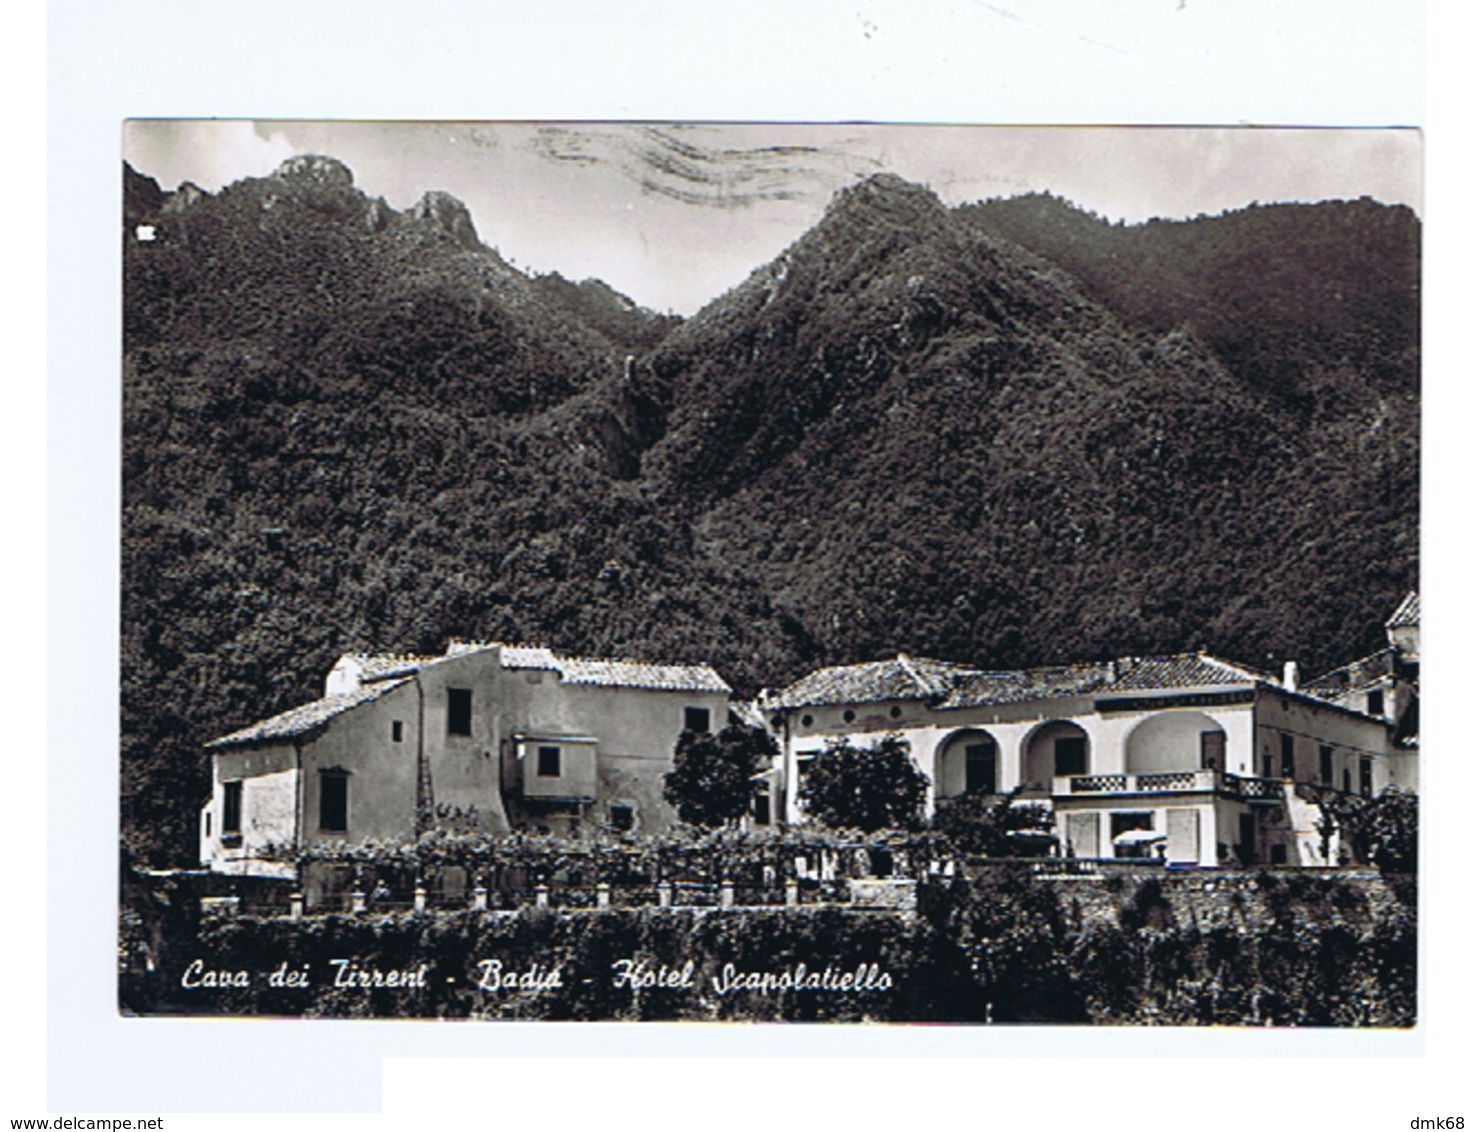 CAVA DE TIRRENI ( SALERNO ) BADIA - HOTEL SCAPOLATIELLO - EDIZ. METONTI - 1959  (3230) - Cava De' Tirreni